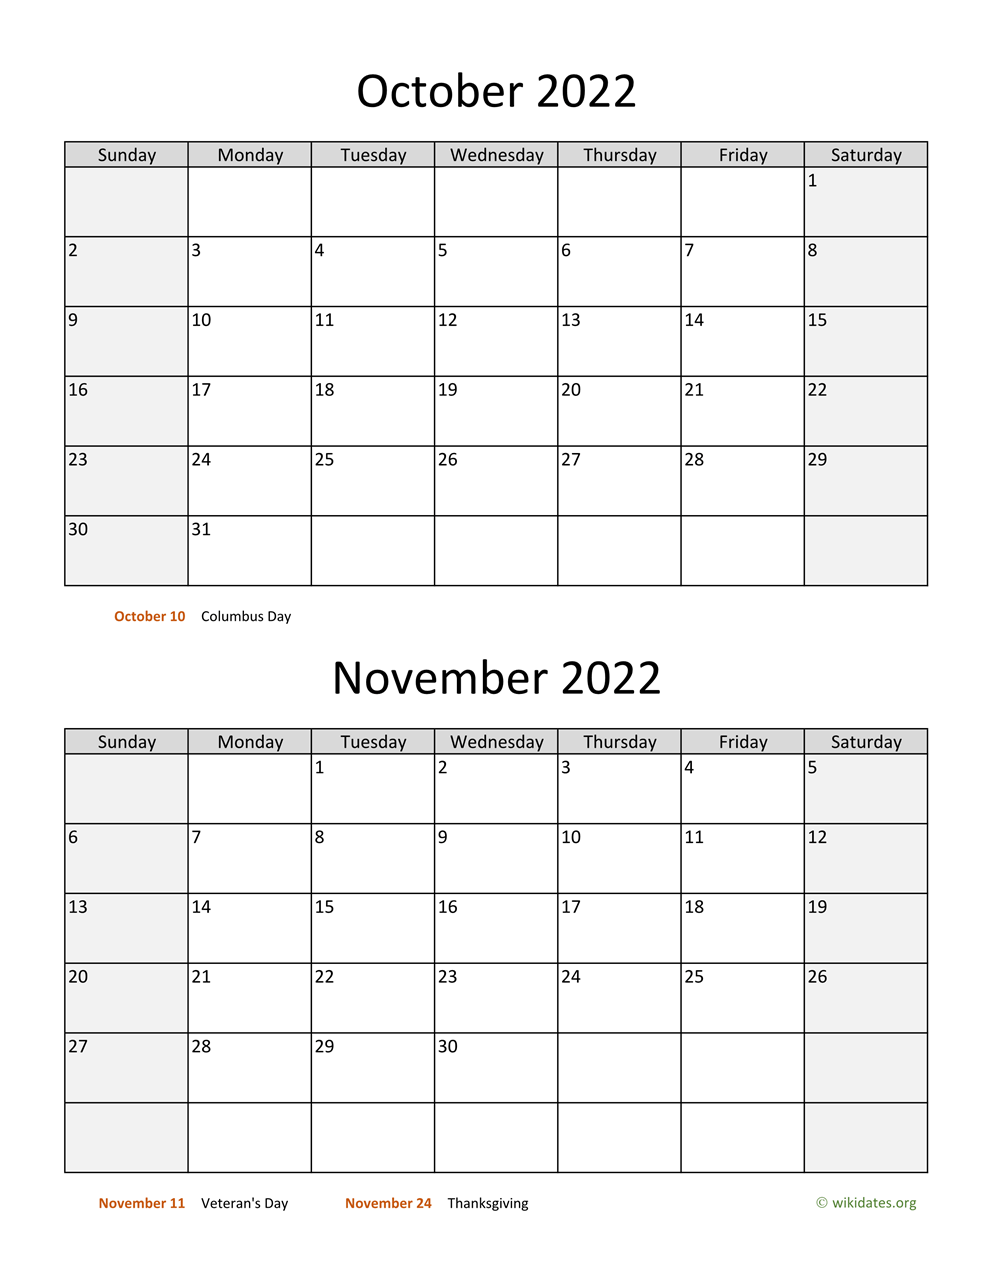 September October November 2022 Calendar October And November 2022 Calendar | Wikidates.org